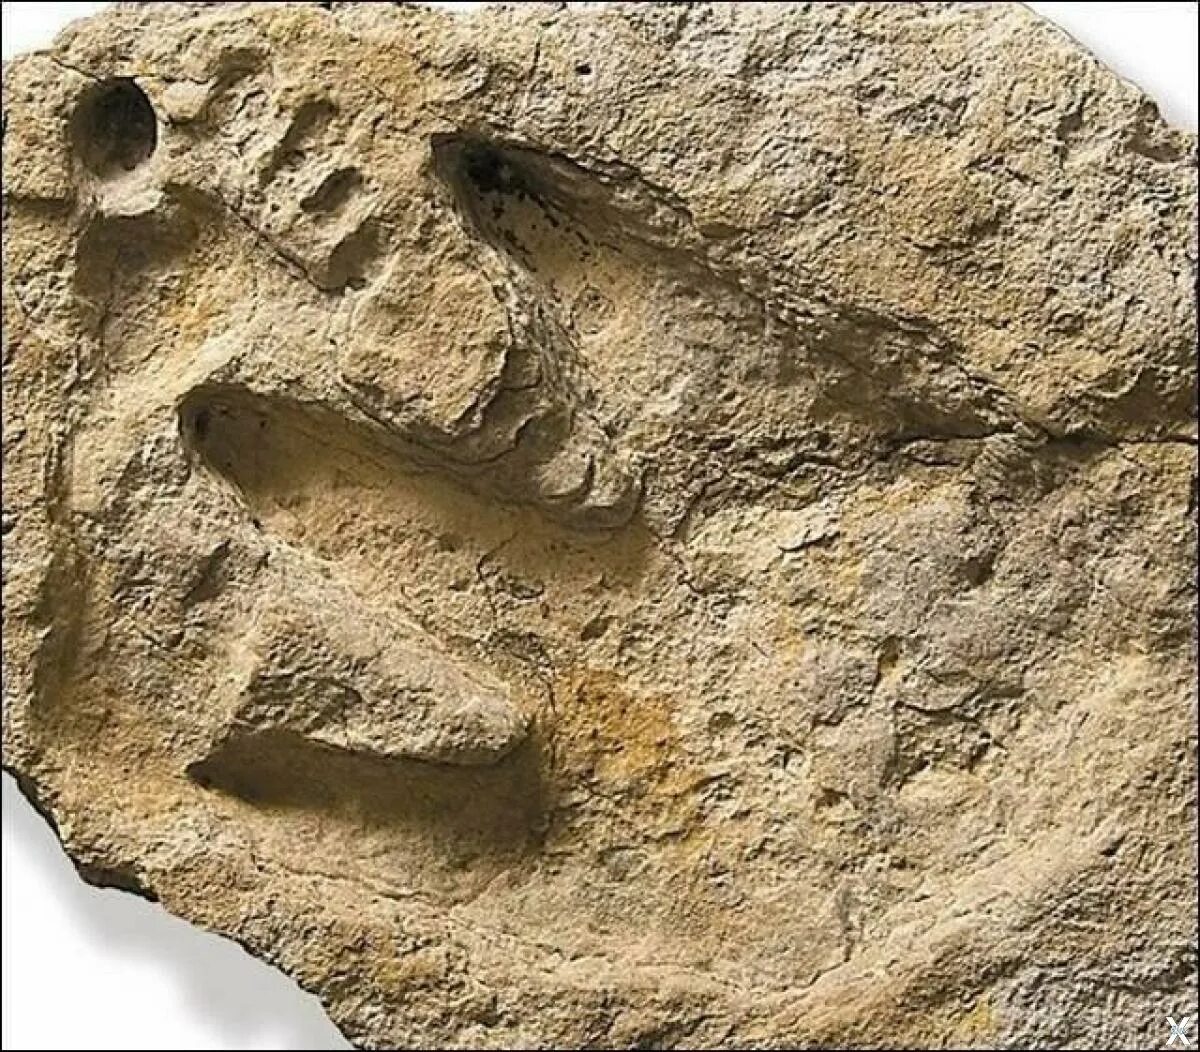 Следы древней жизни. Окаменелые следы человека и динозавра. Глен Роуз следы человека и динозавра. Отпечатки ног человека и динозавров. Отпечаток динозавра в Камне.